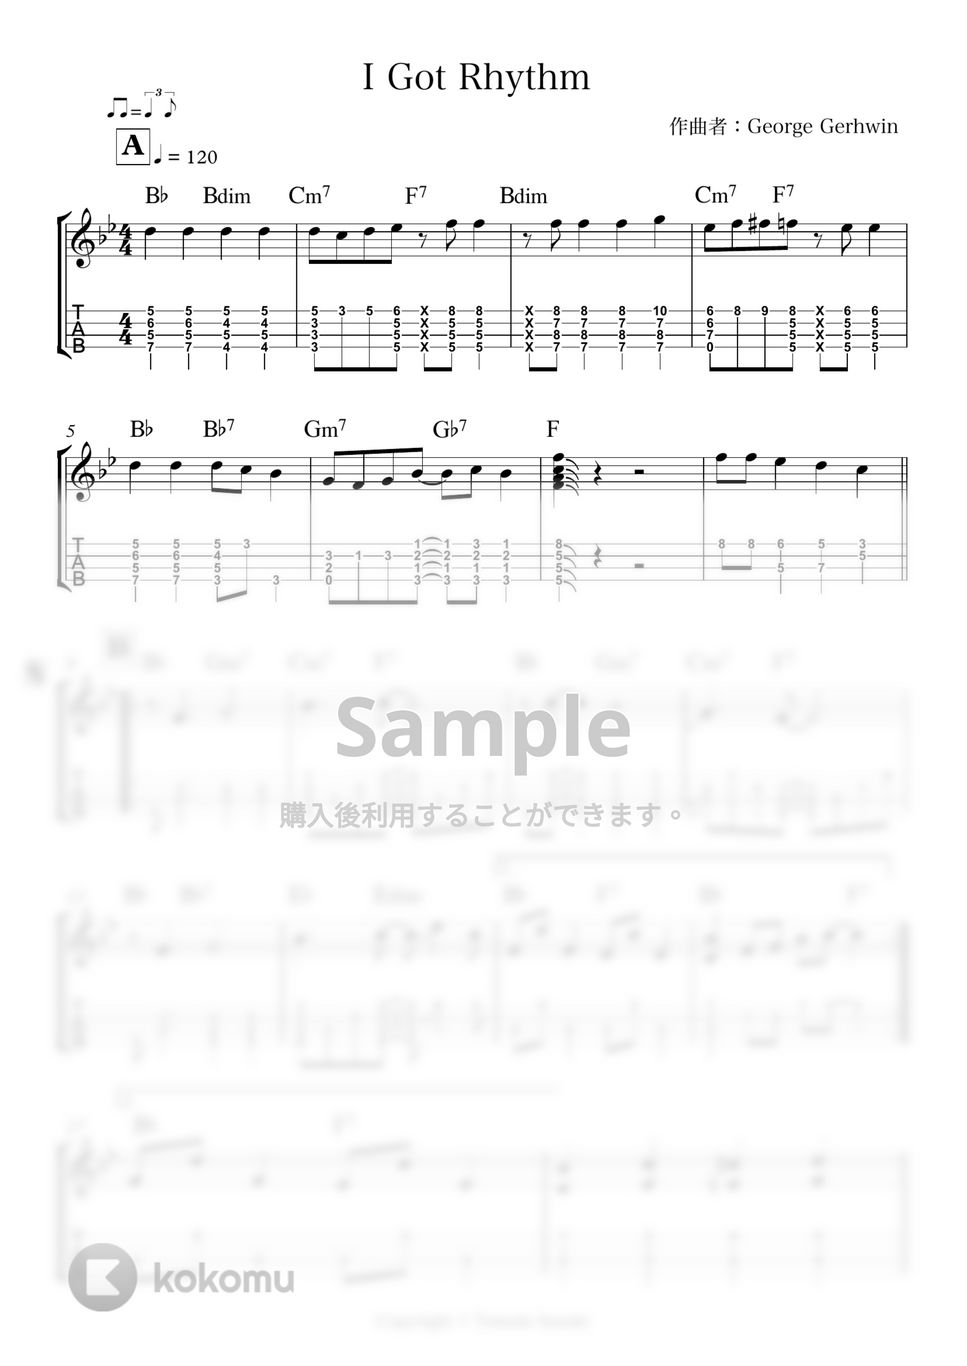 George Gershwin - I got Rhythm by 鈴木智貴